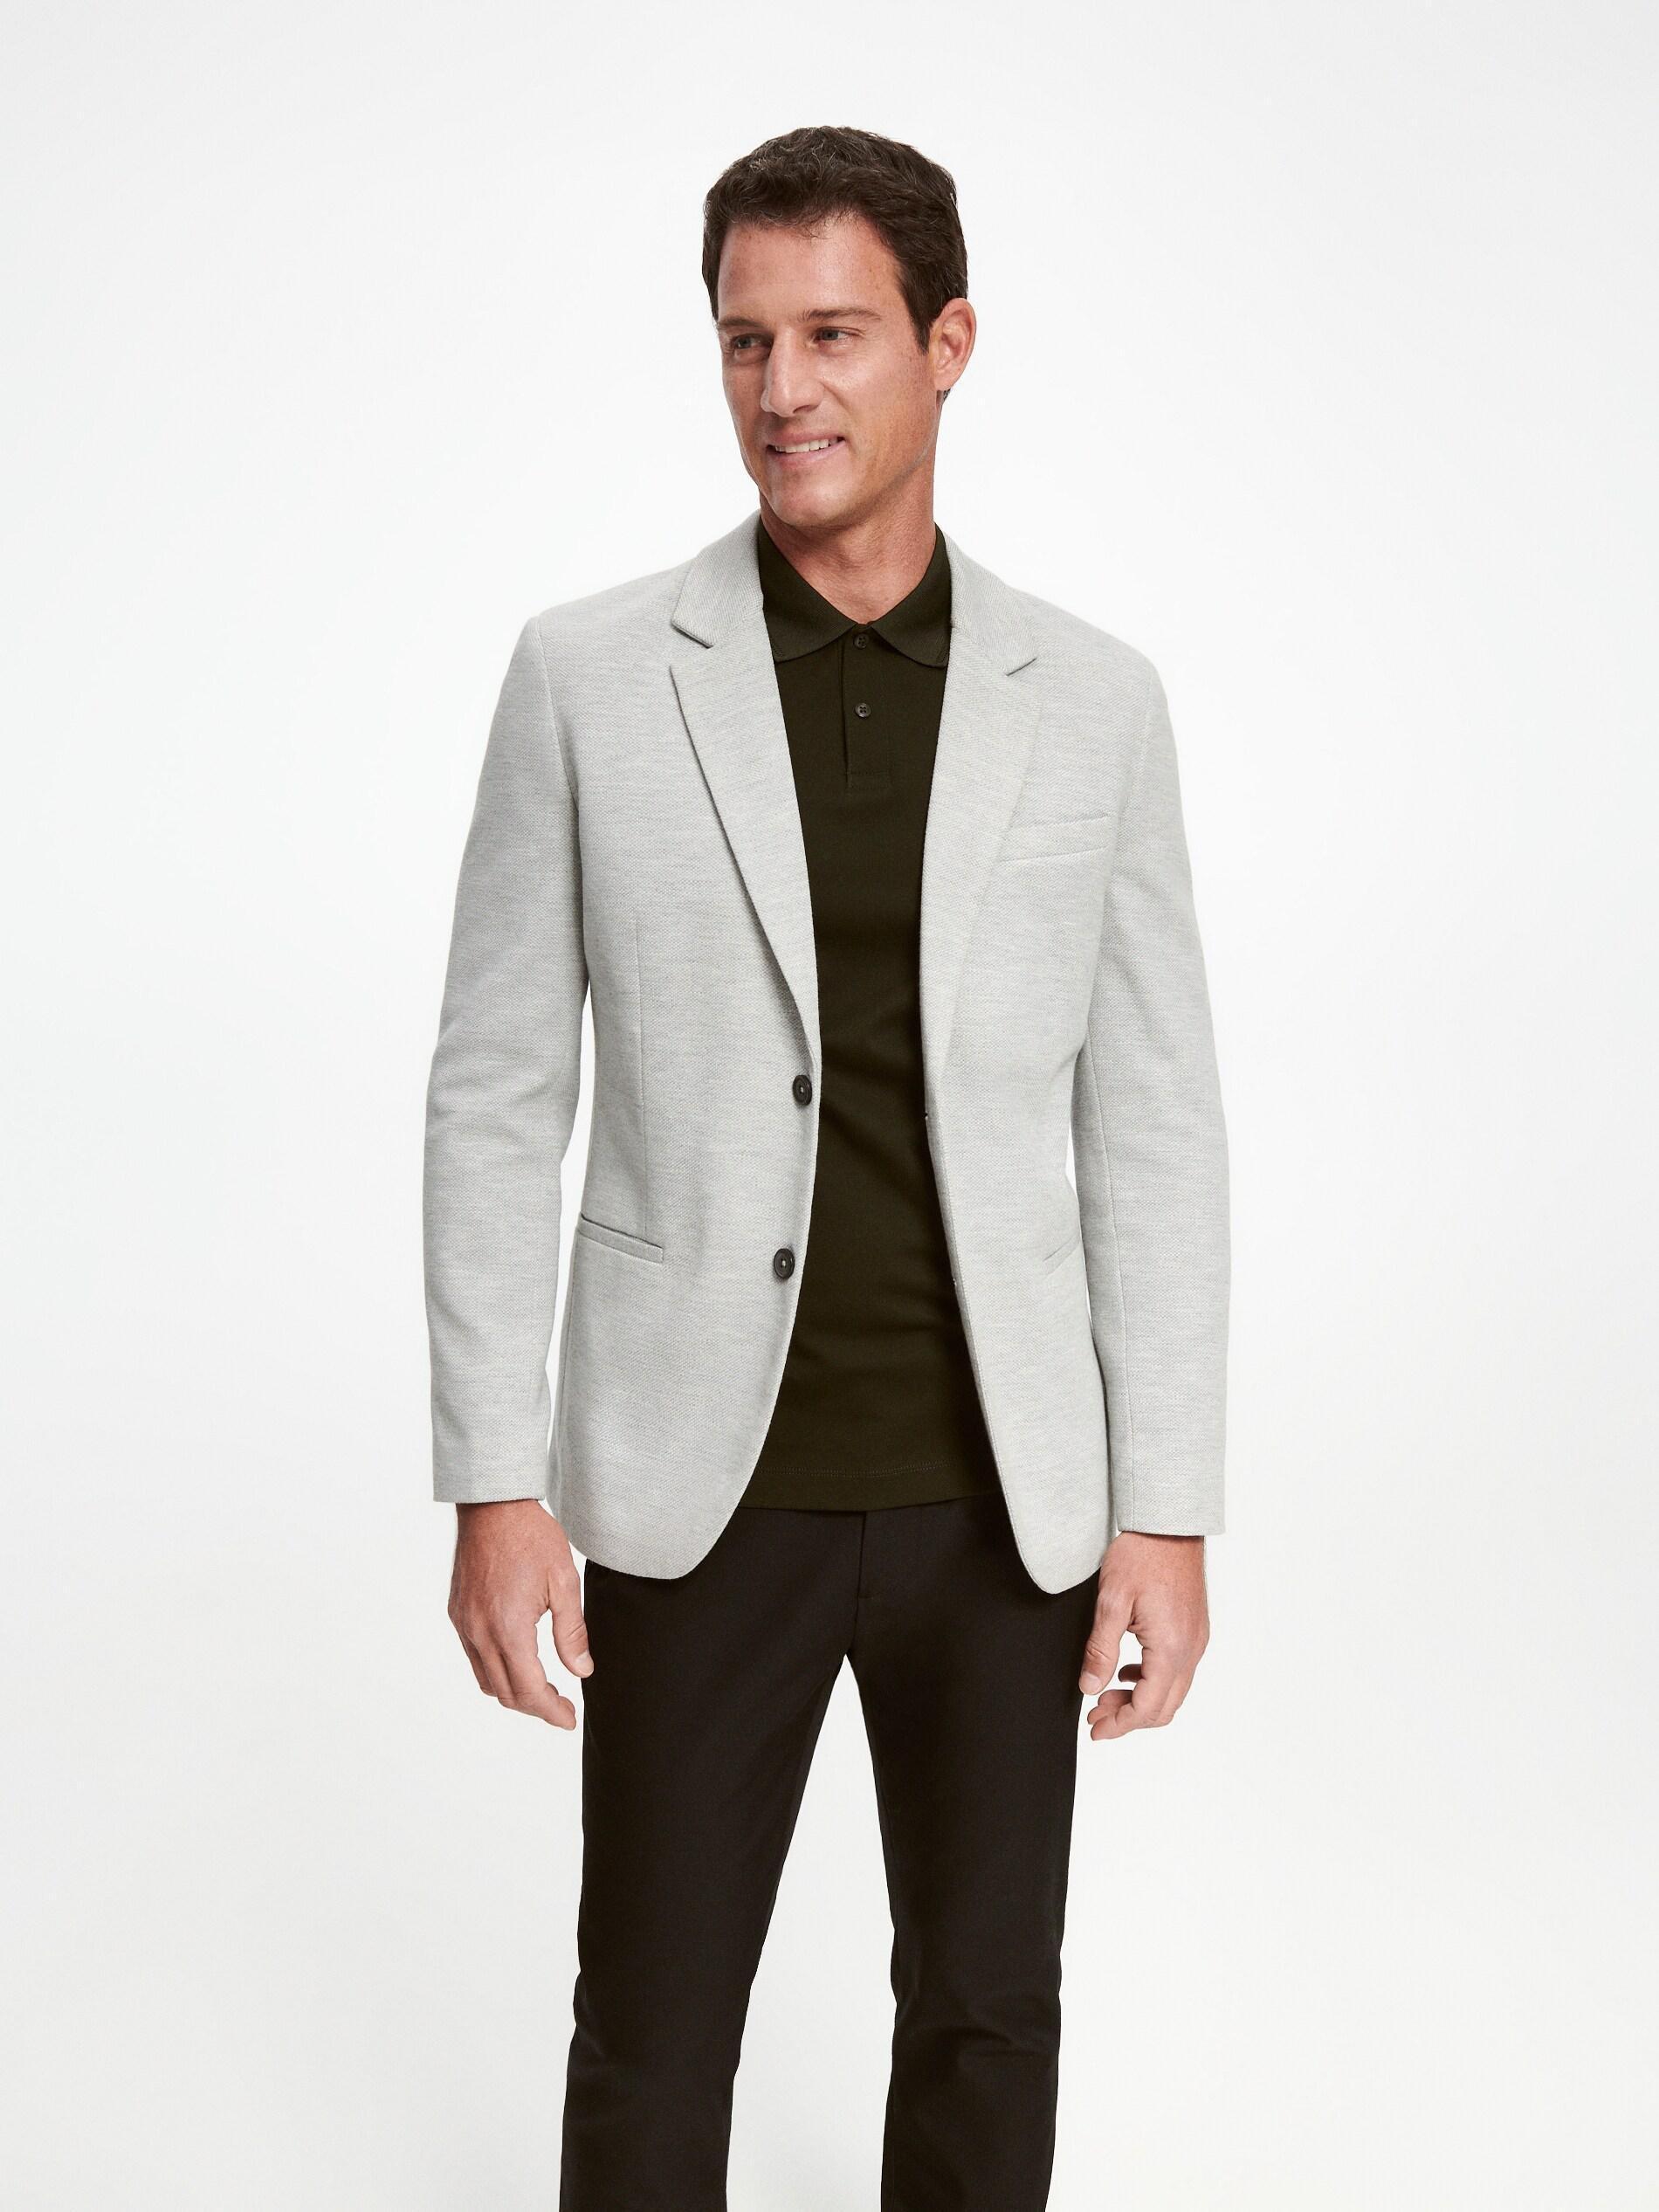 Men's Cotton Stand Collar Slim Fit Plain Blazer, Size: S,M,L,XL